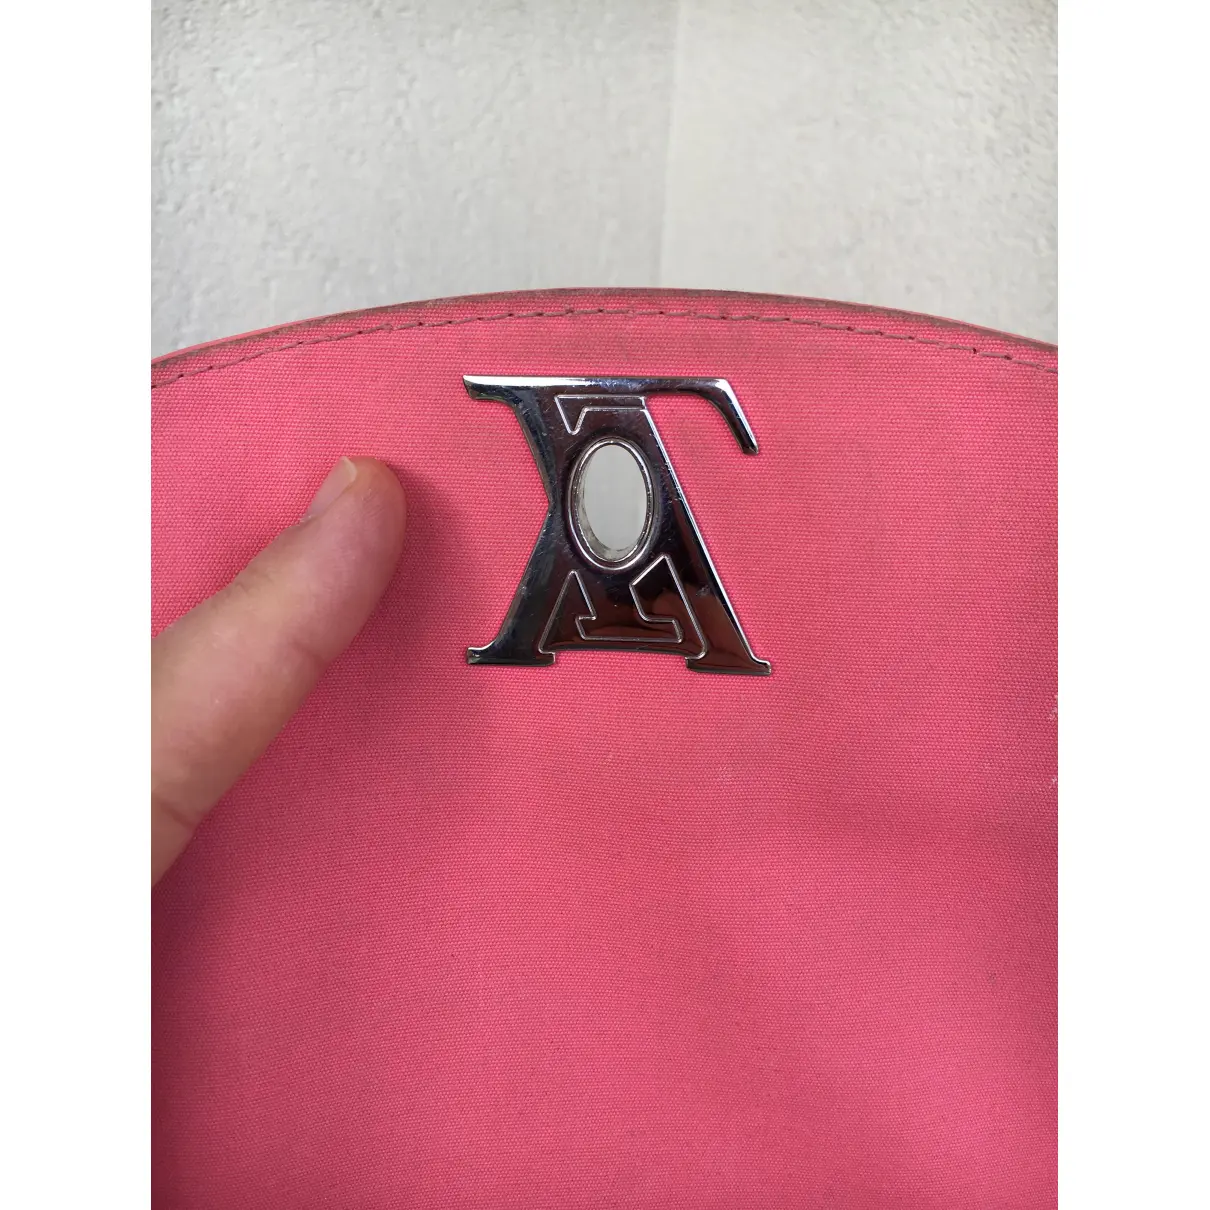 Pasadena patent leather handbag Louis Vuitton